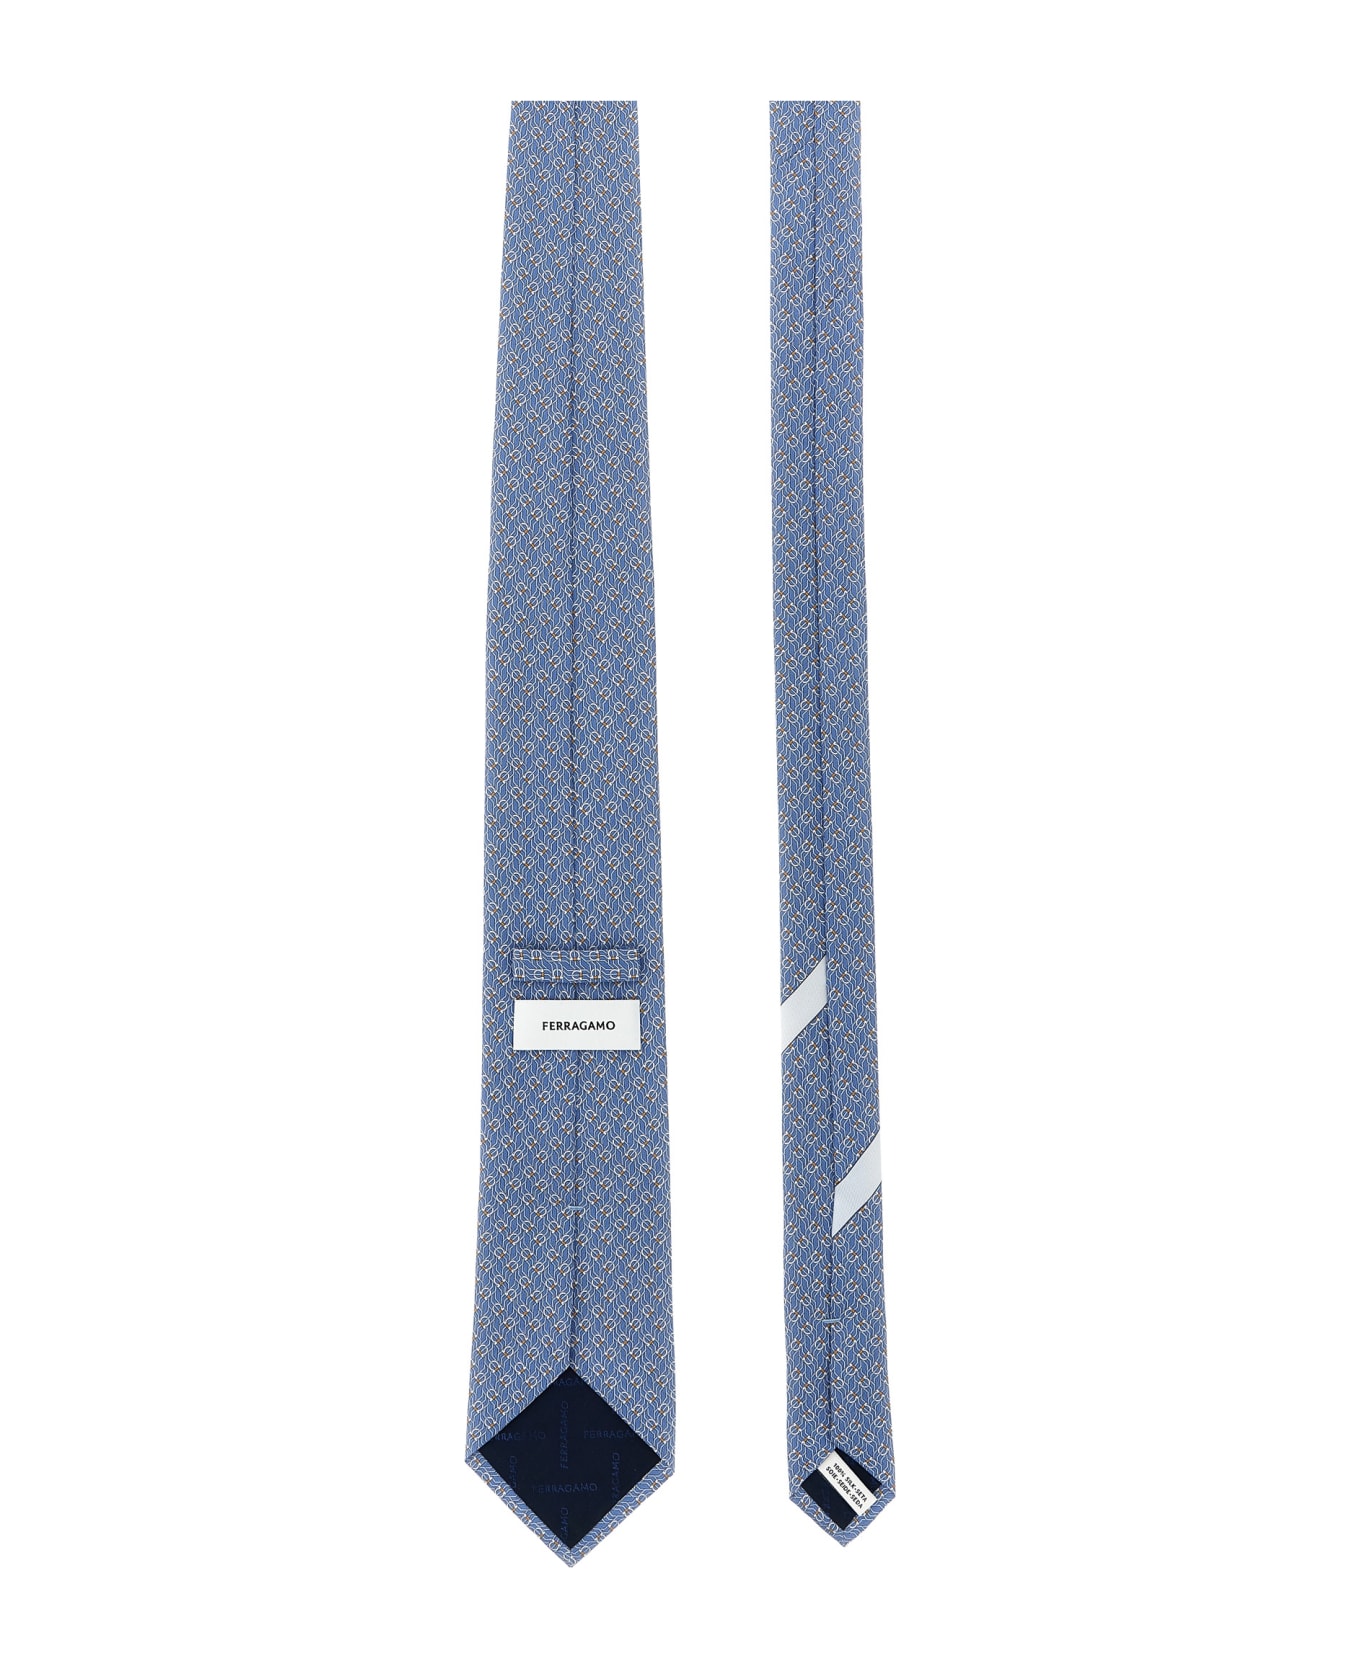 Ferragamo 'tetris' Tie - Gnawed Blue